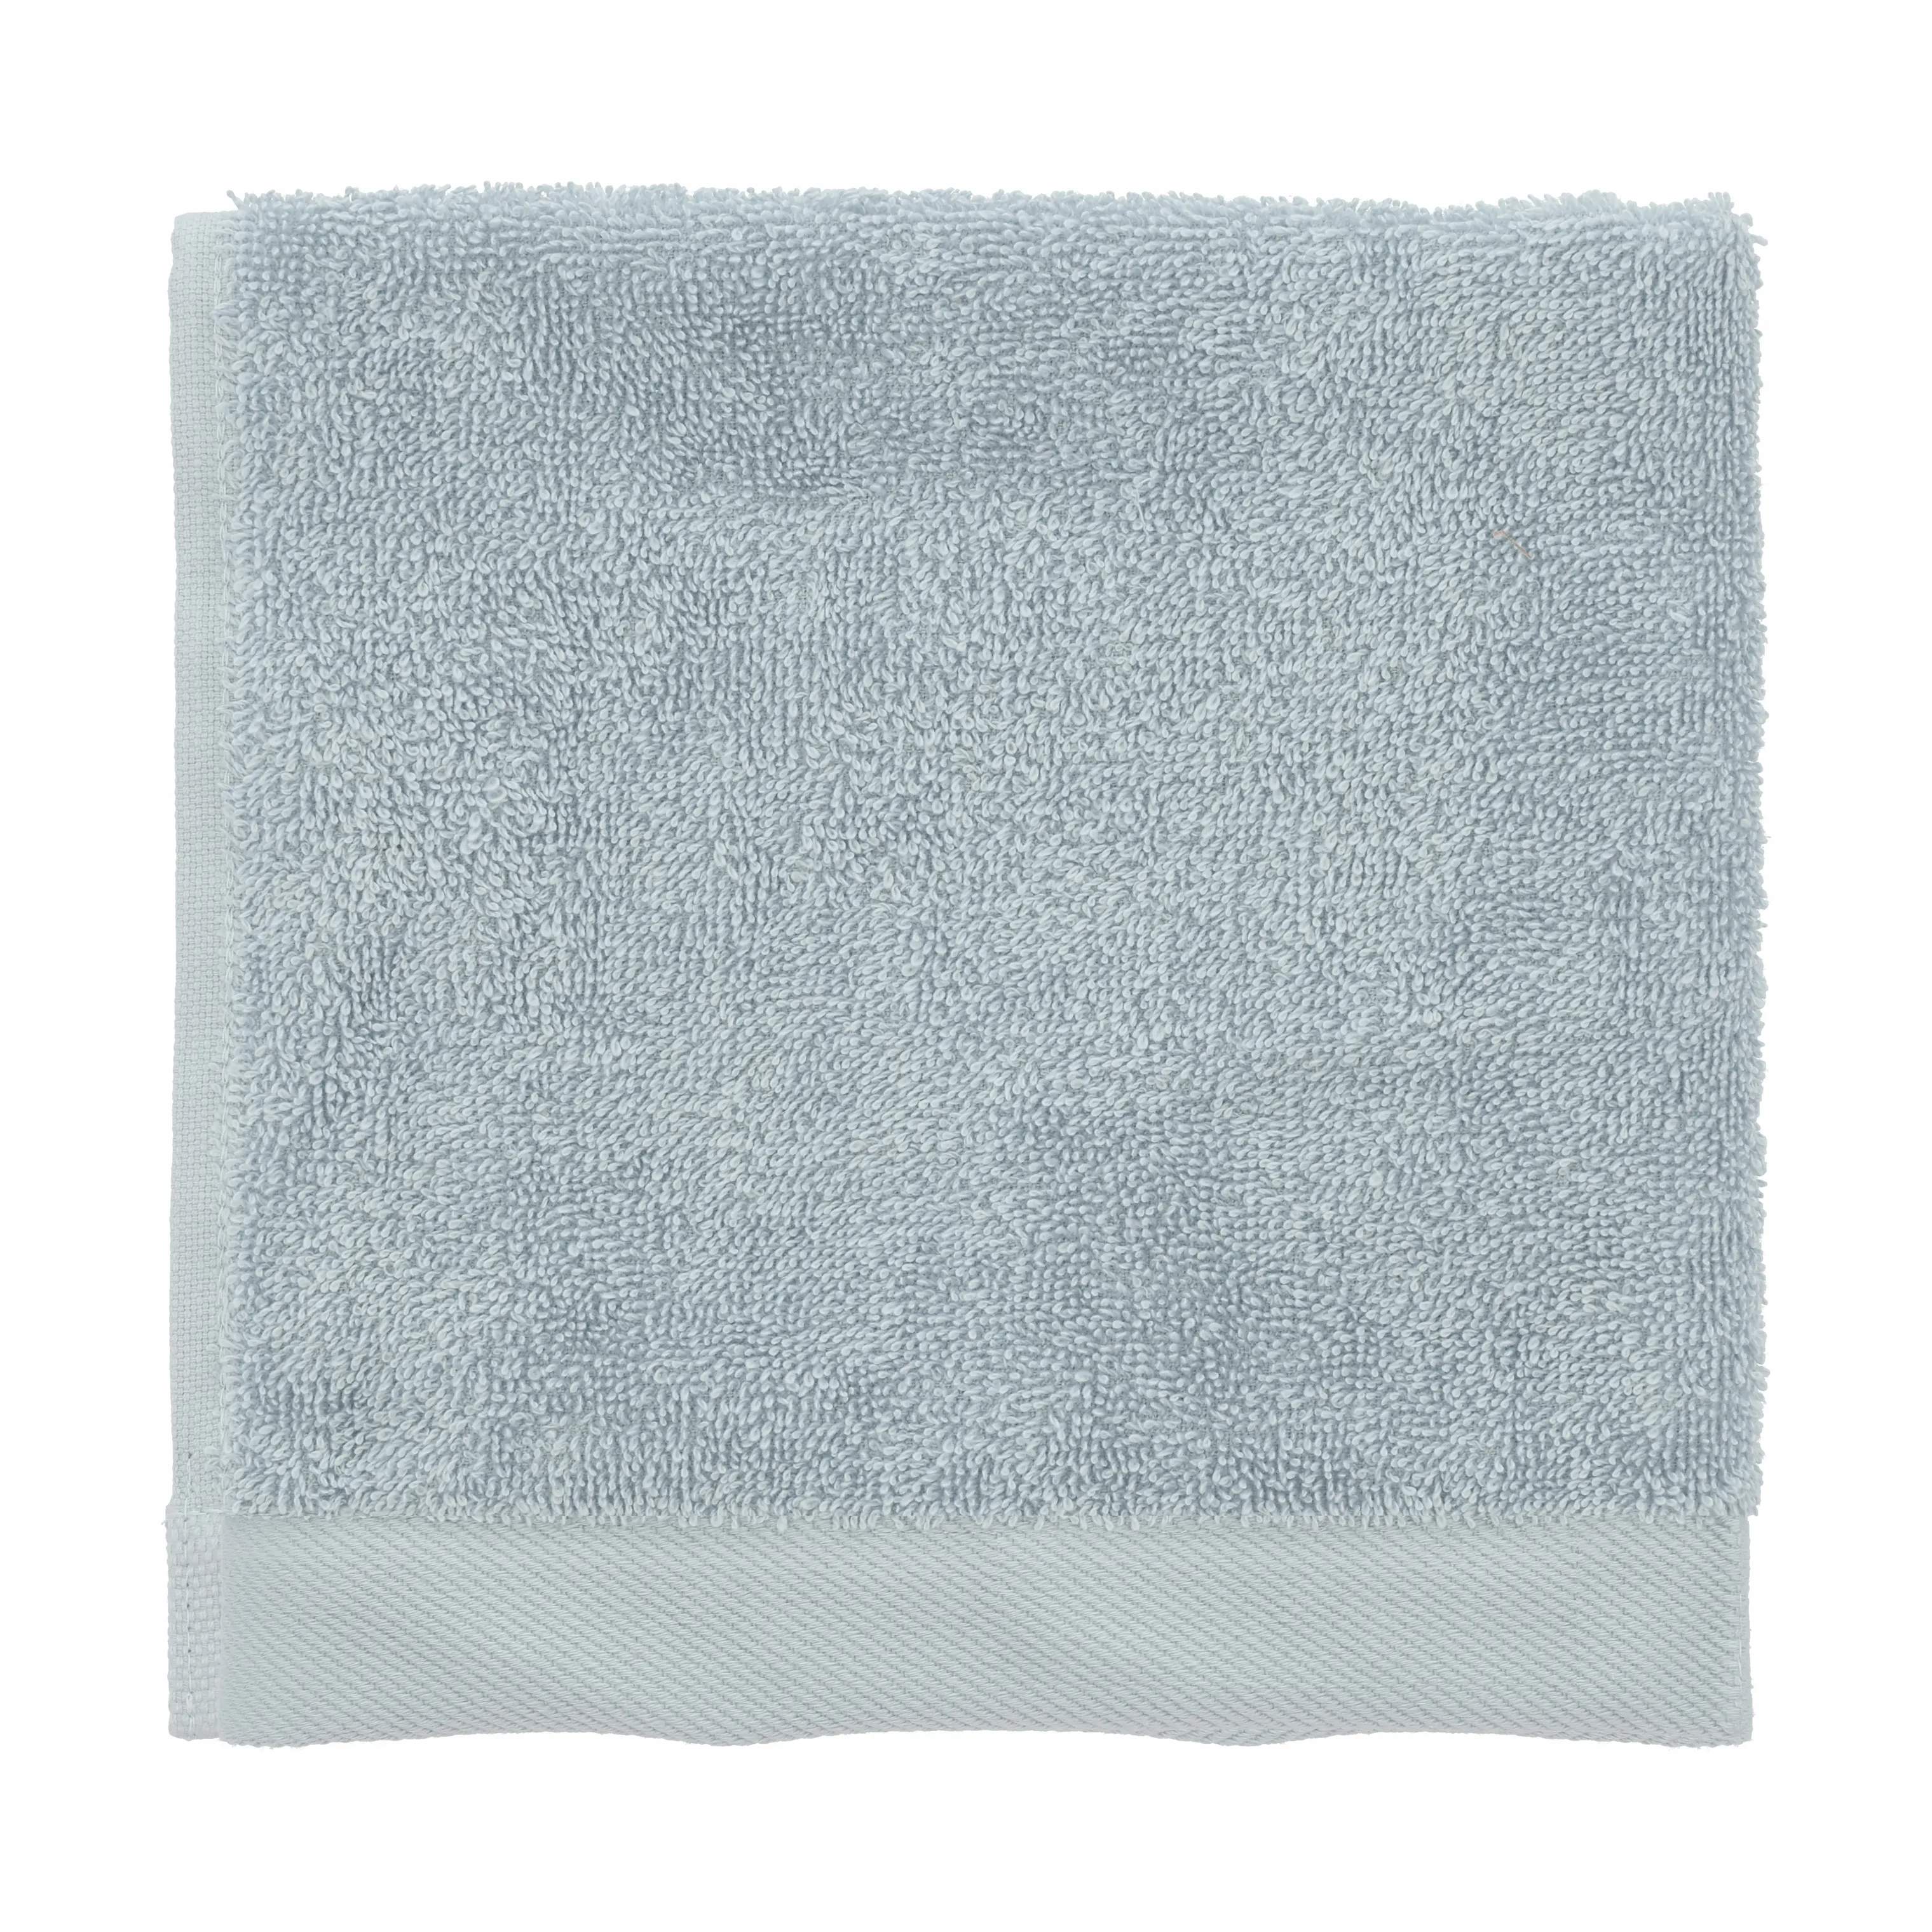 Organic Comfort Håndkæde, linen blue, large